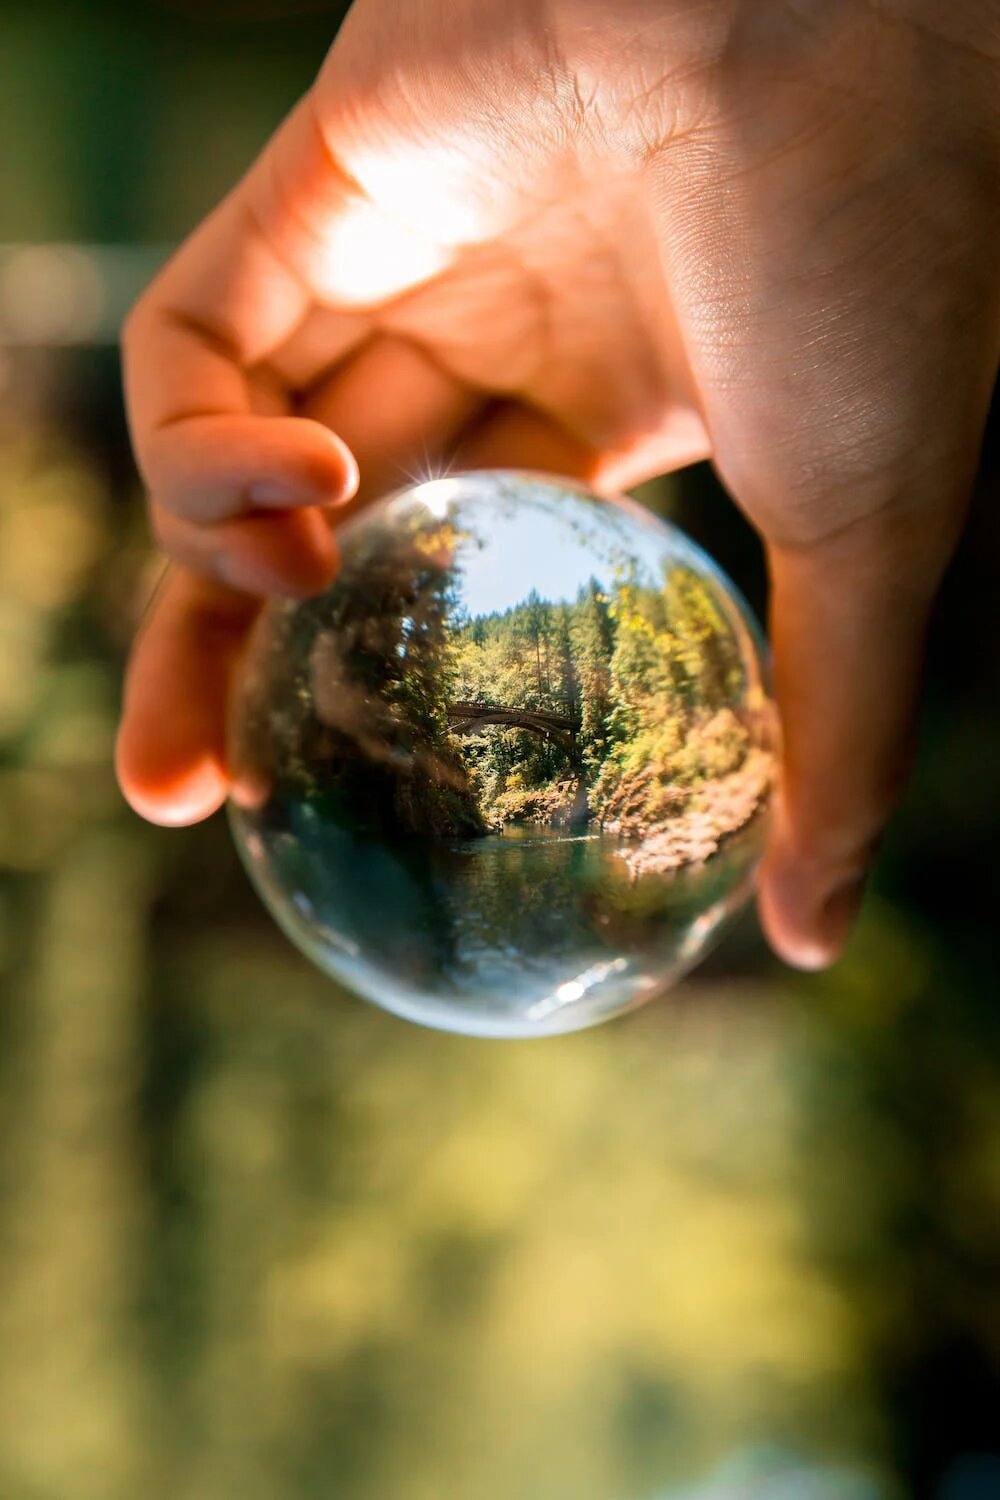 Une main tient une boule de verre transparente où l'on peut voir de la végétation.